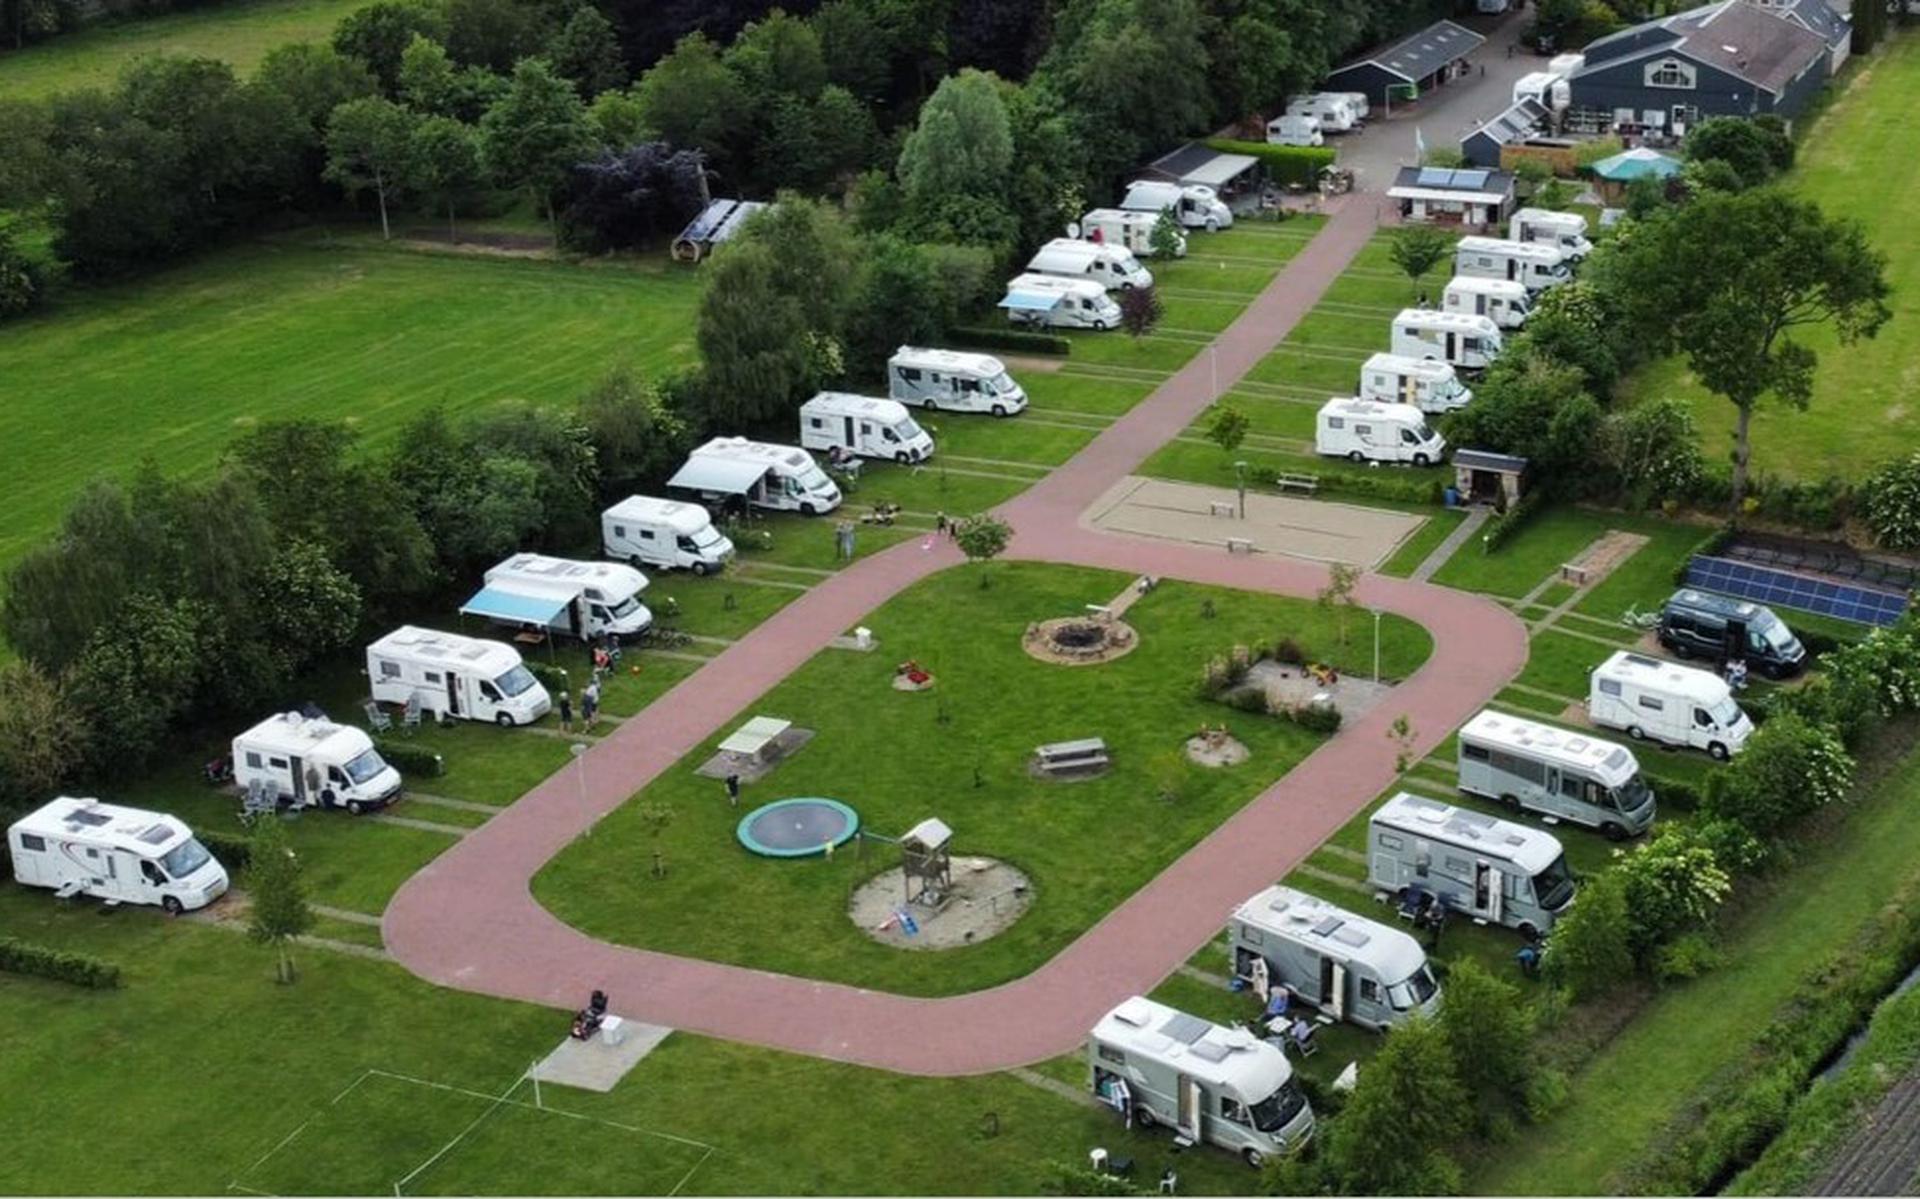 Camperplaats Stoutenburght in Blesdijke. 